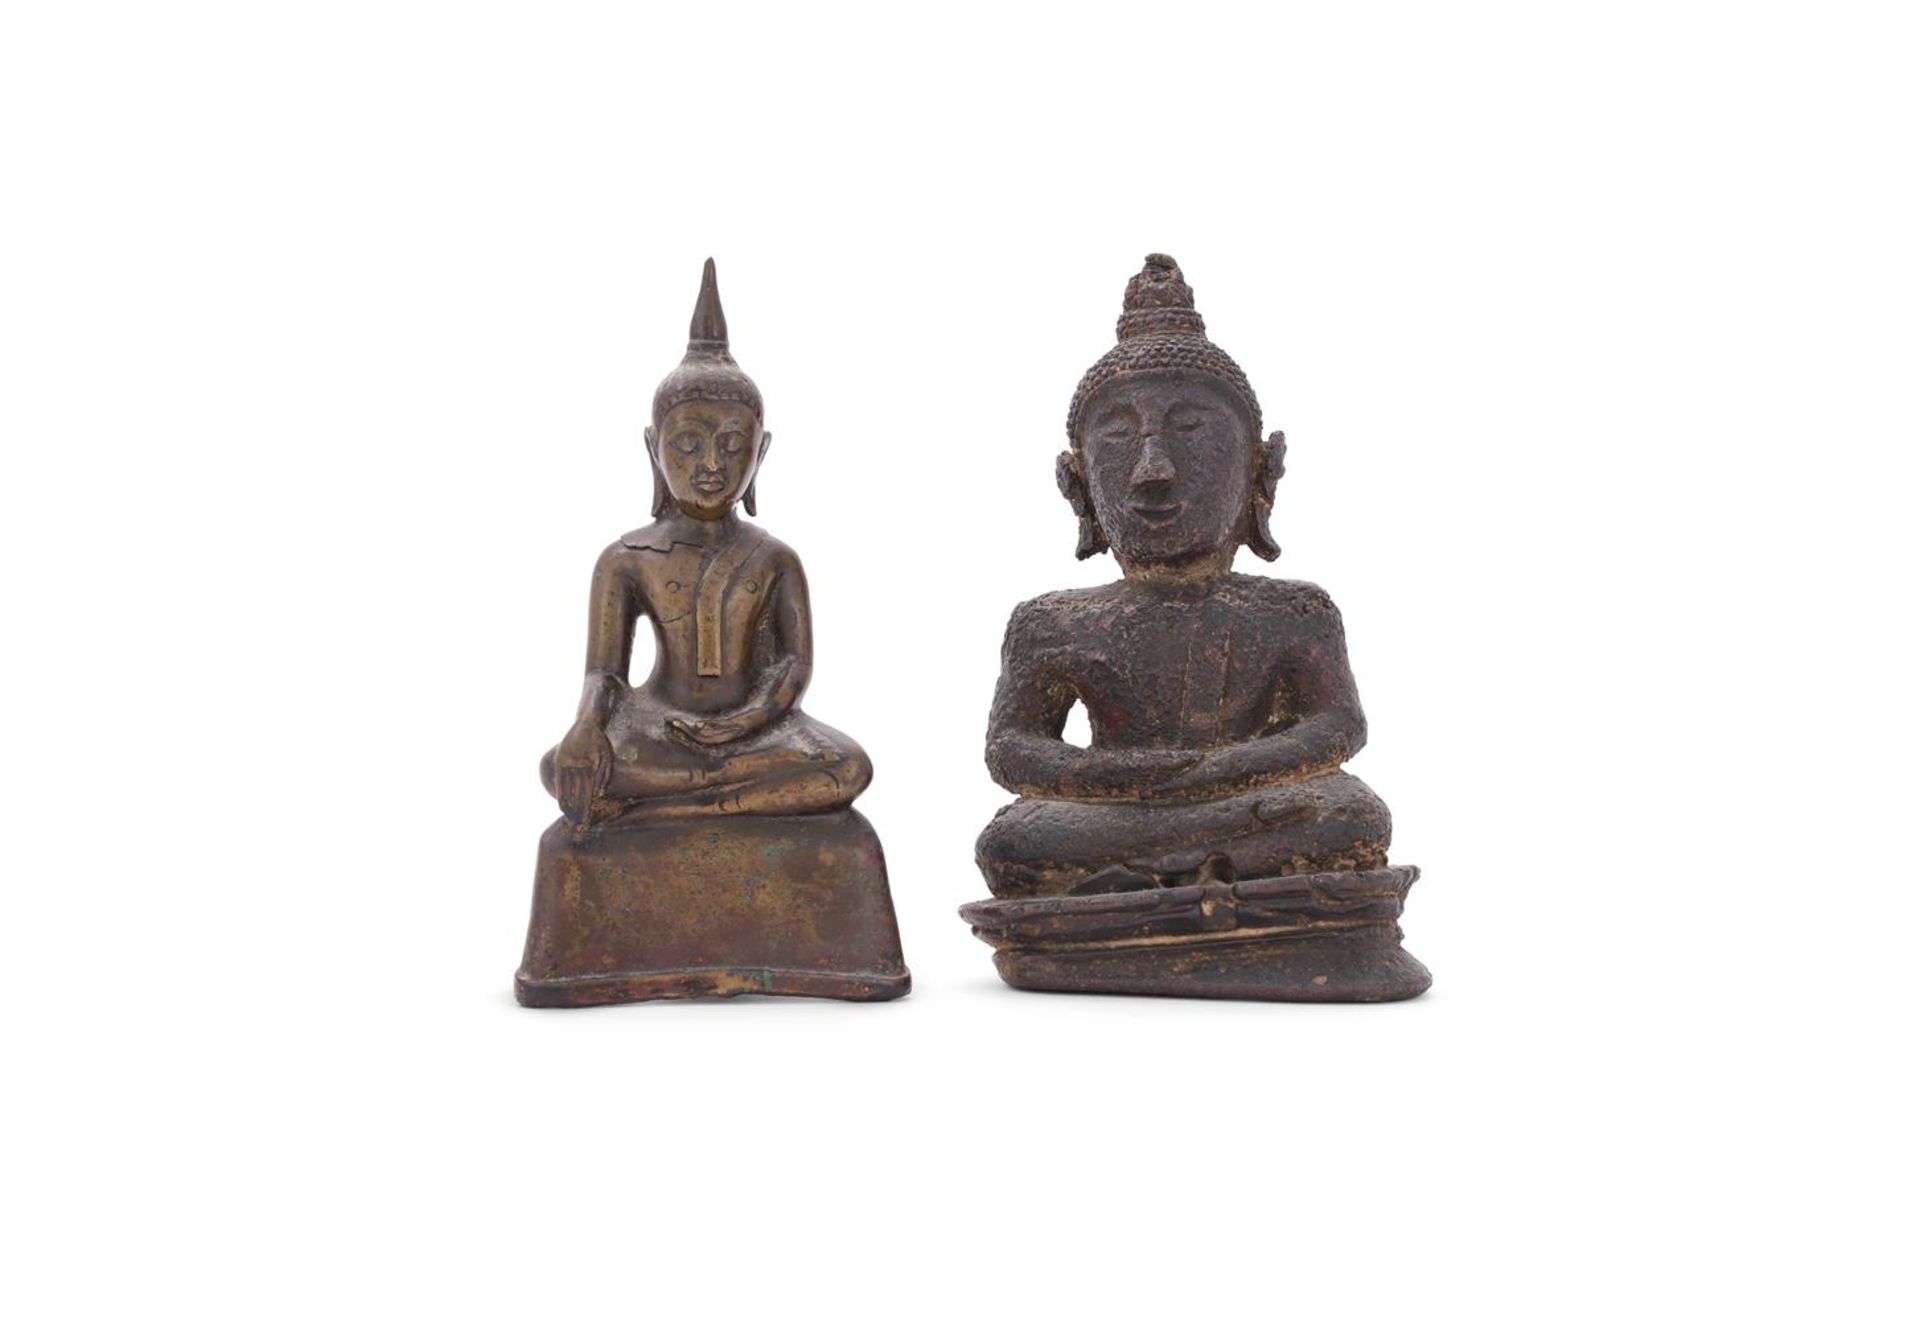 Two figures of Buddha